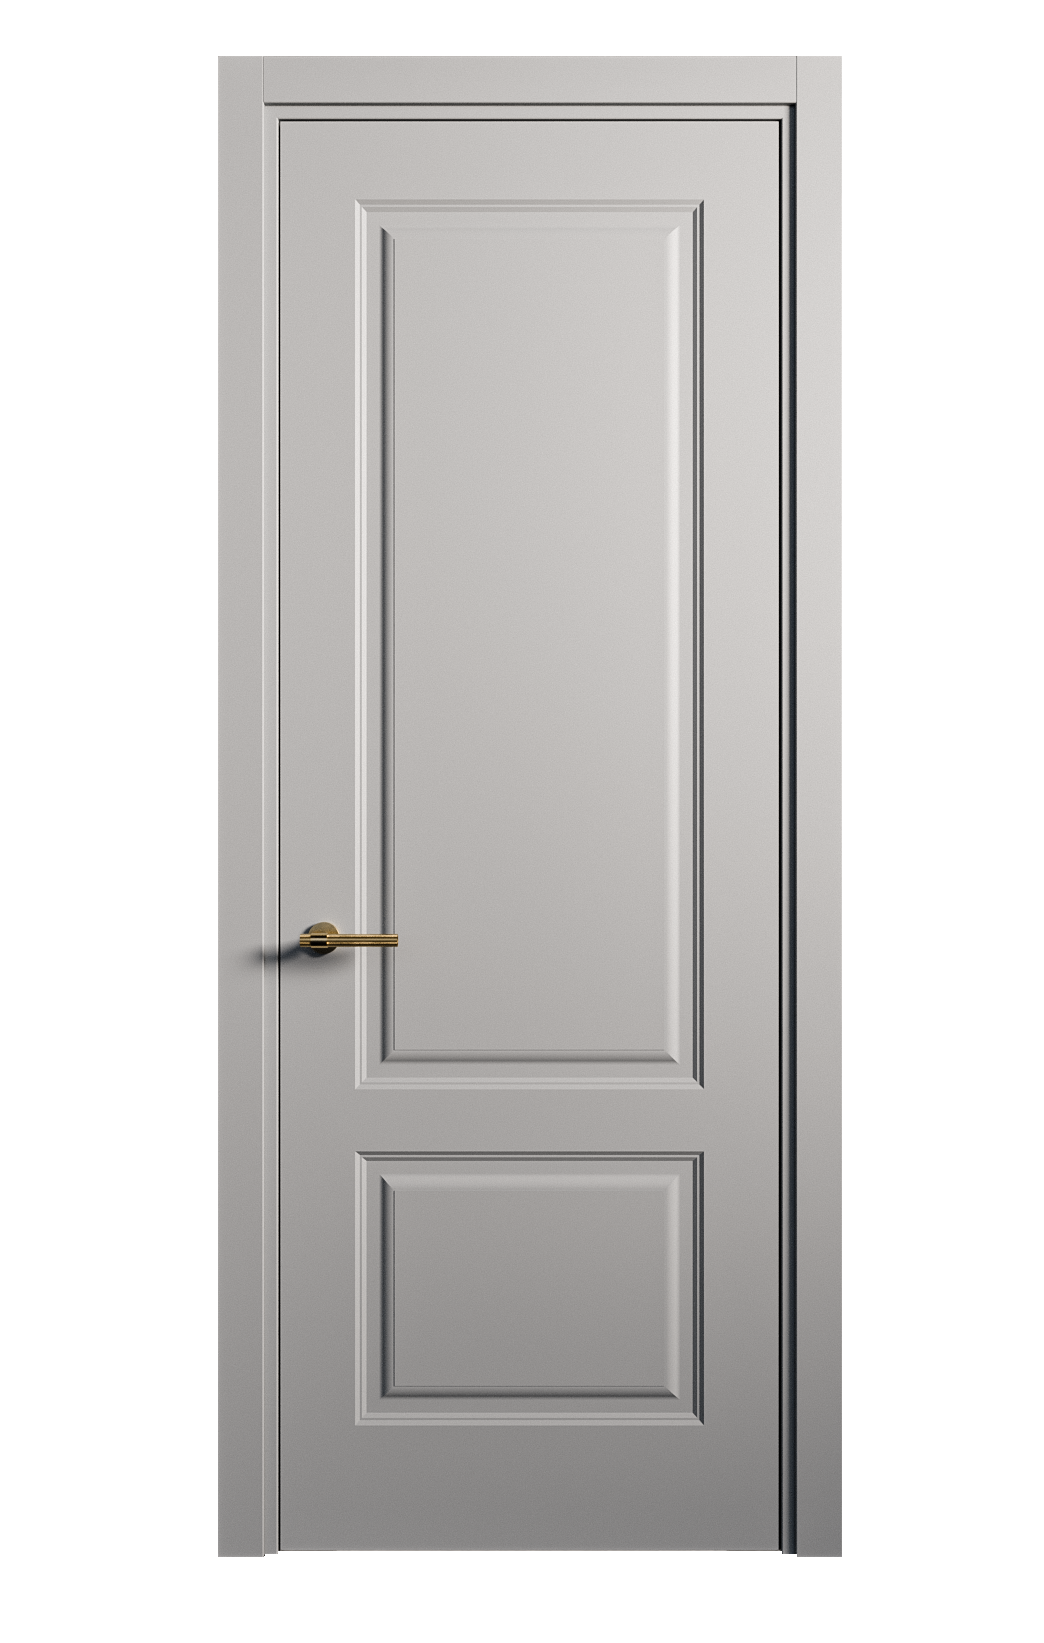 Межкомнатная дверь Вита-1 глухая эмаль ral 7040 26267